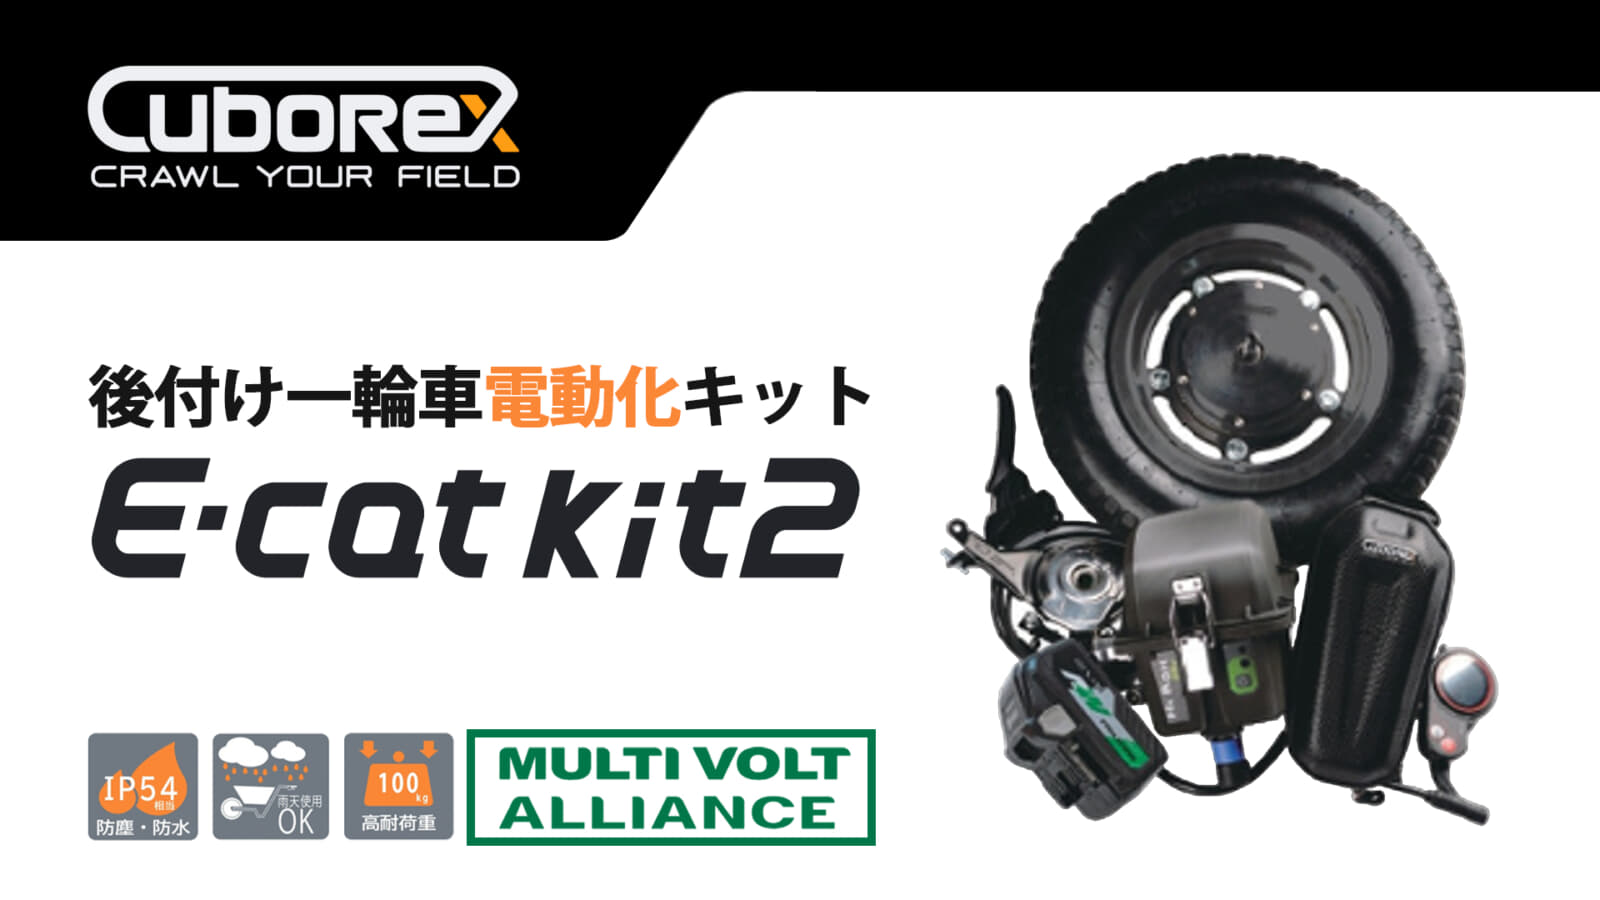 CuboRex E-cat kit2 後付け一輪車電動化キットを発売、マルチボルトバッテリー対応の電動ネコ車